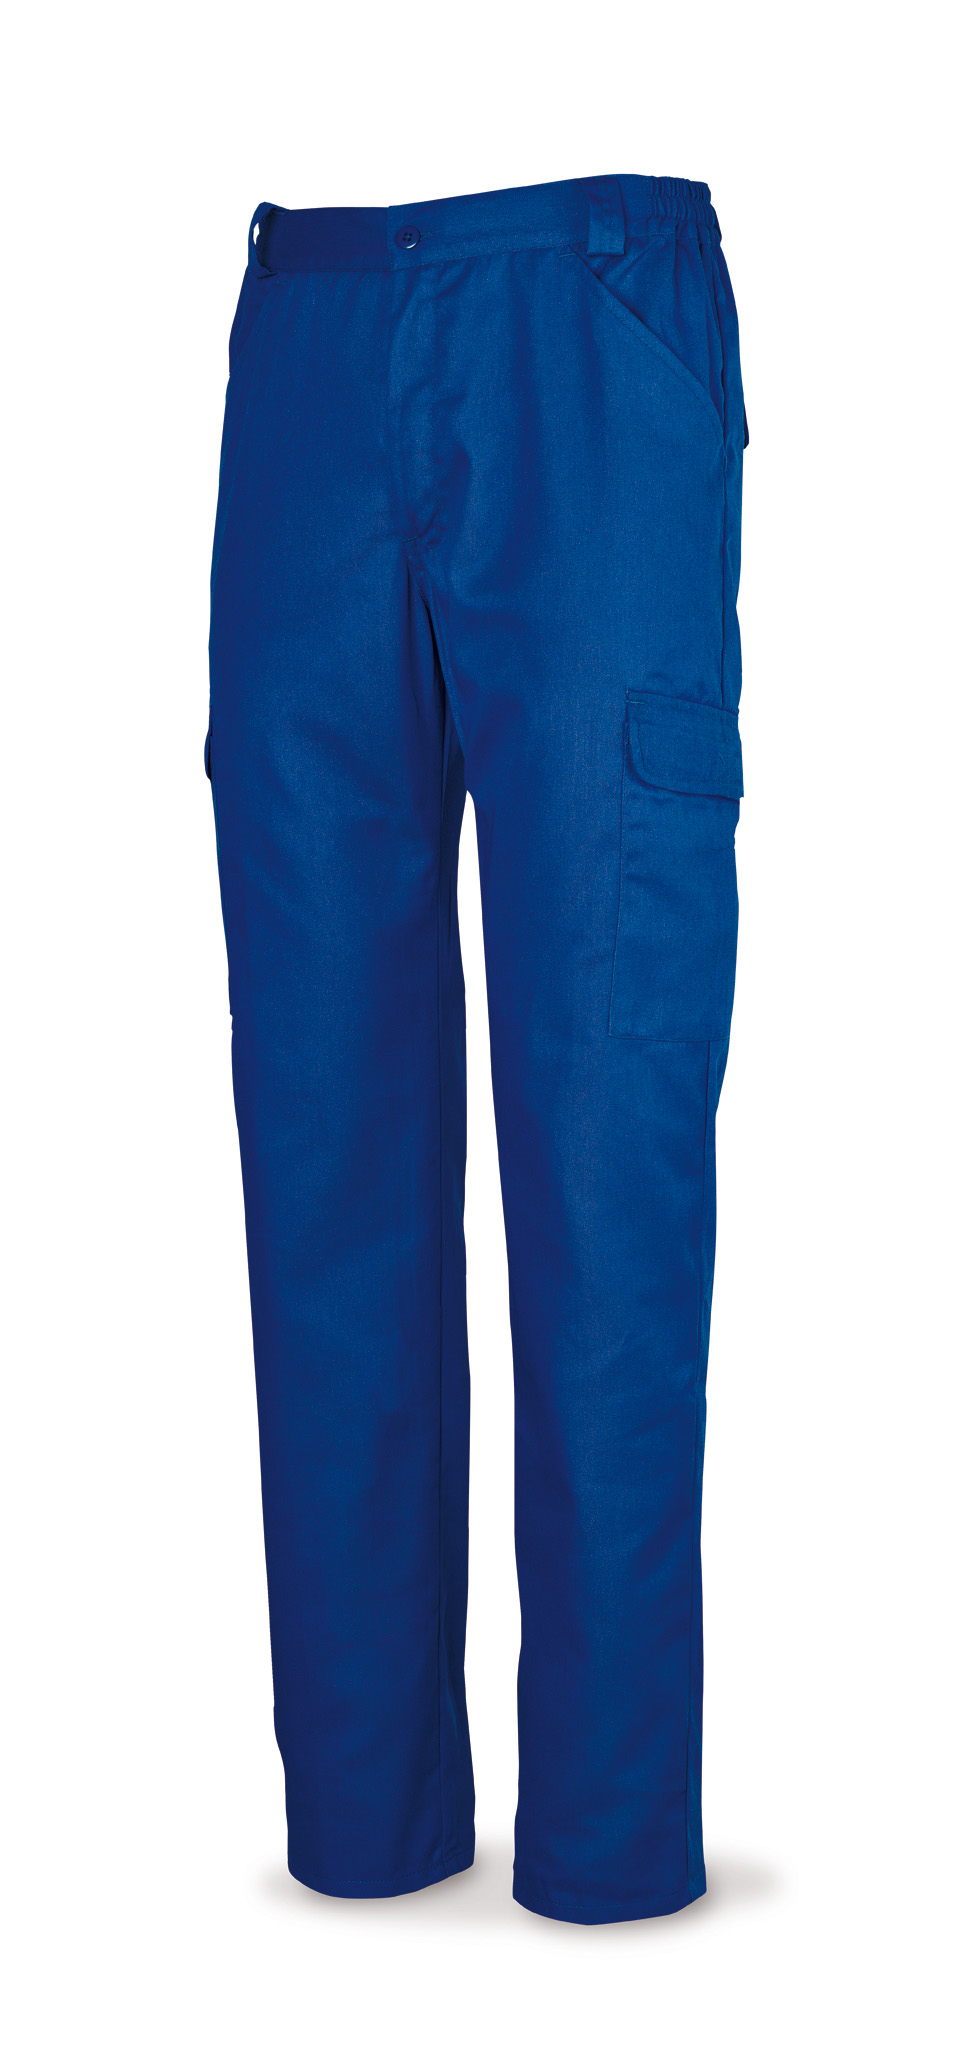 388-PE Vestuario Laboral Basic Line Calças de algodão azul 200 g. Multi-bolsos.